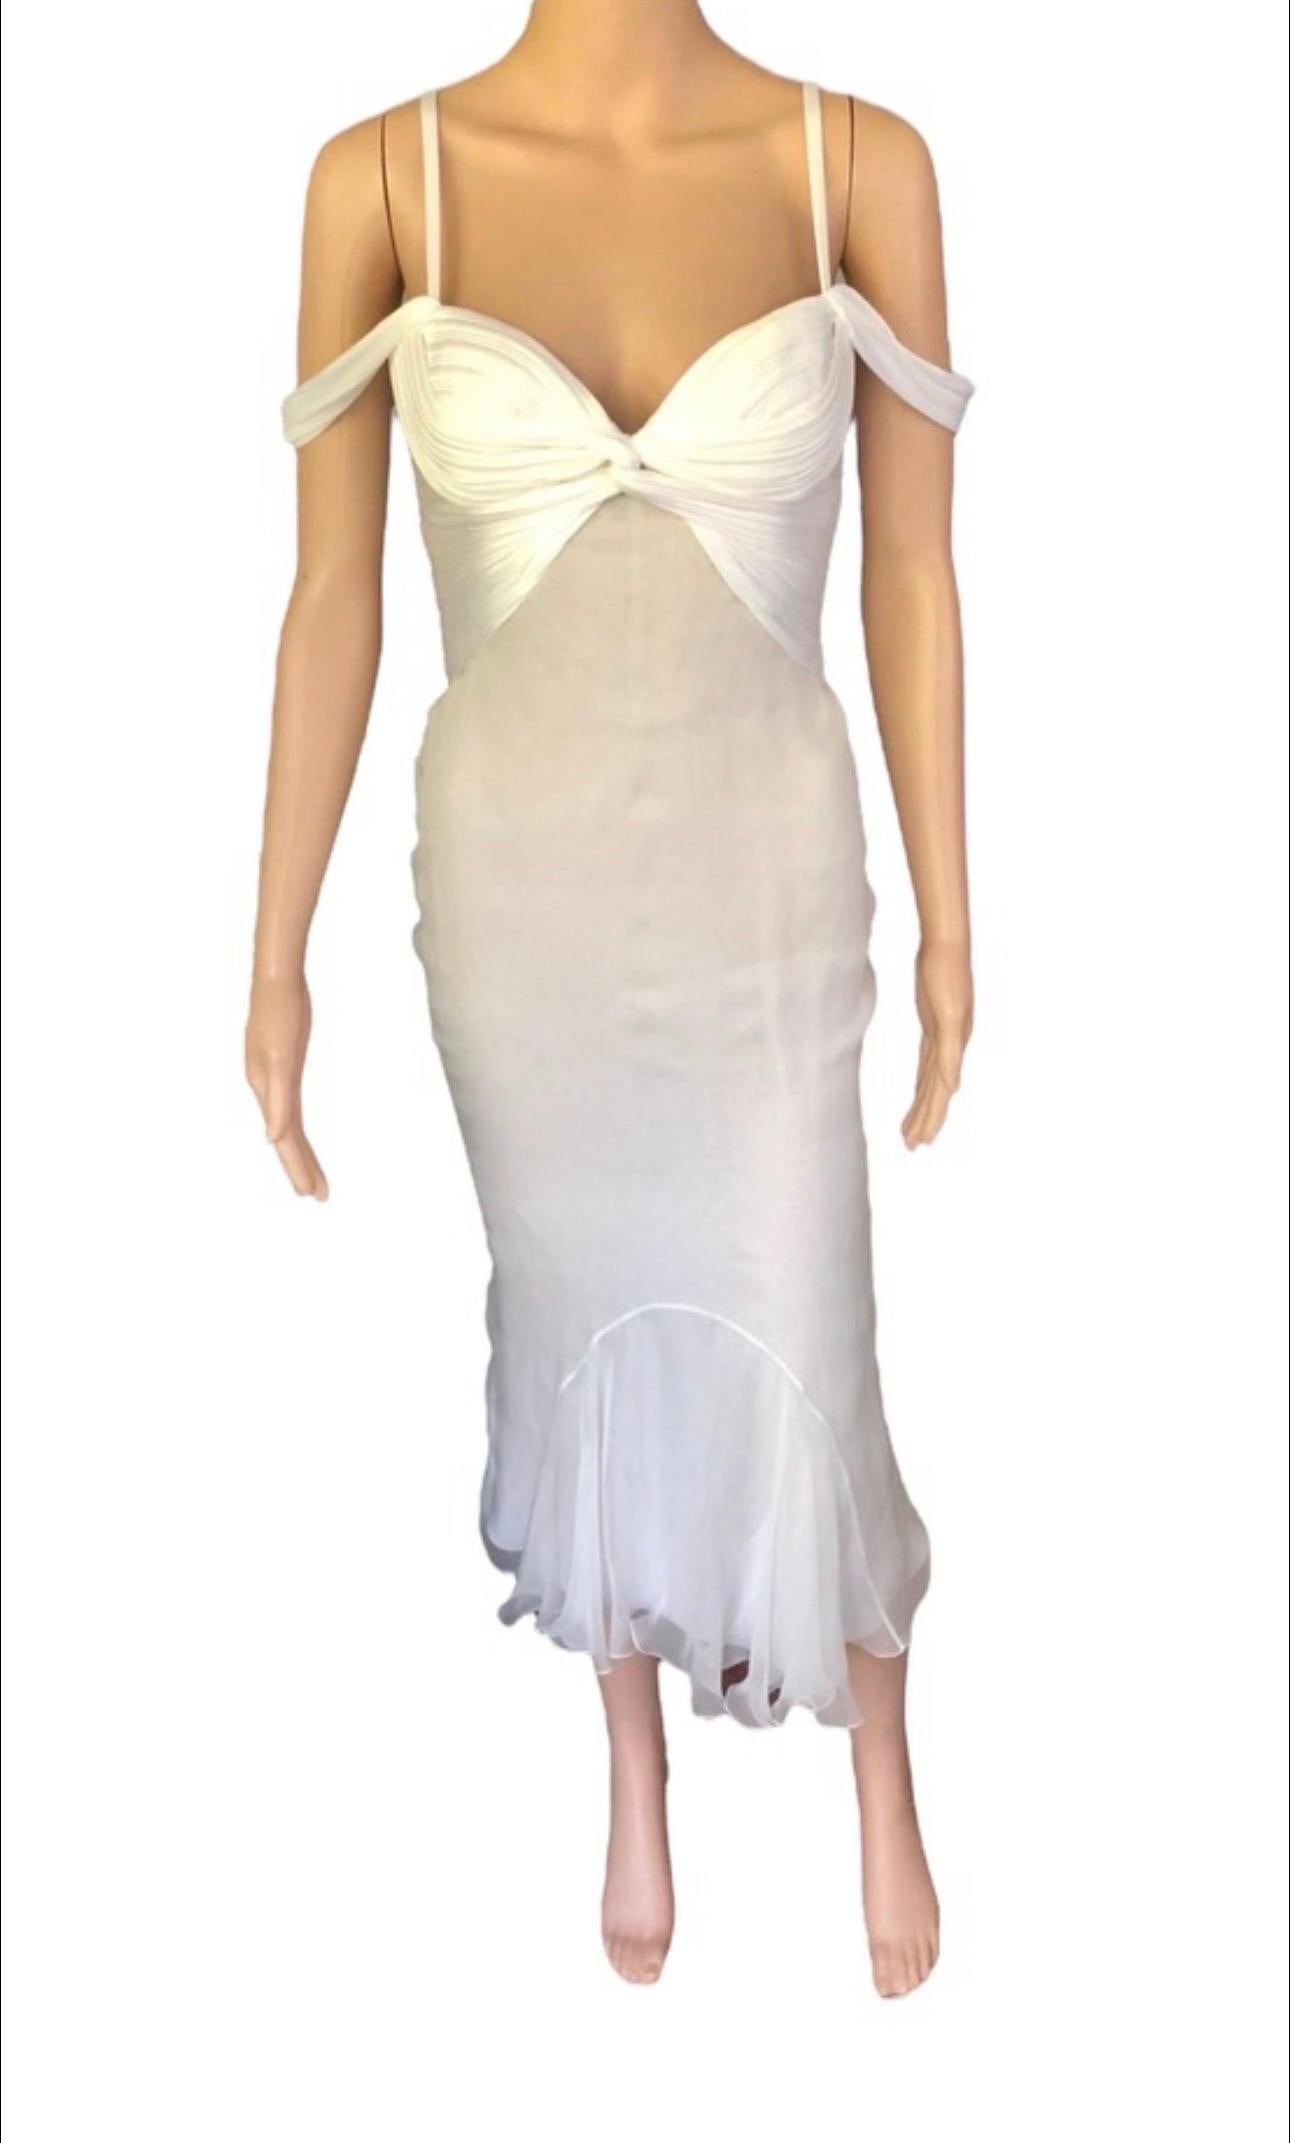 Women's or Men's Versace S/S 2006 Runway Bustier Cutout Silk Ivory Dress 